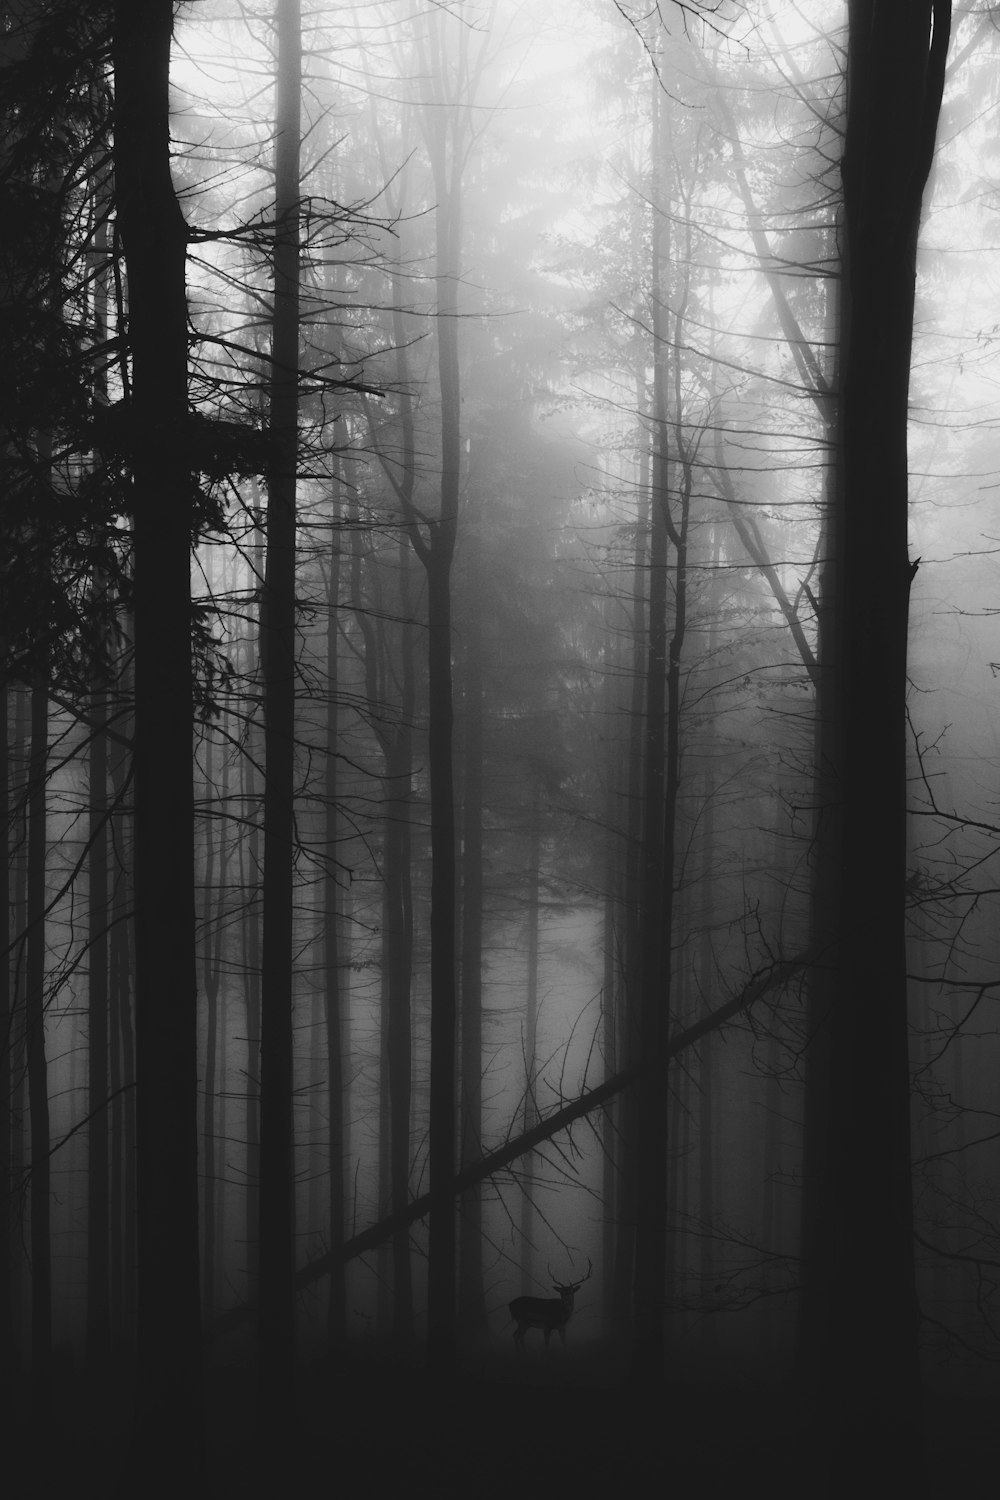 Rehe in der Nähe hoher Bäume, die in Nebel gehüllt sind